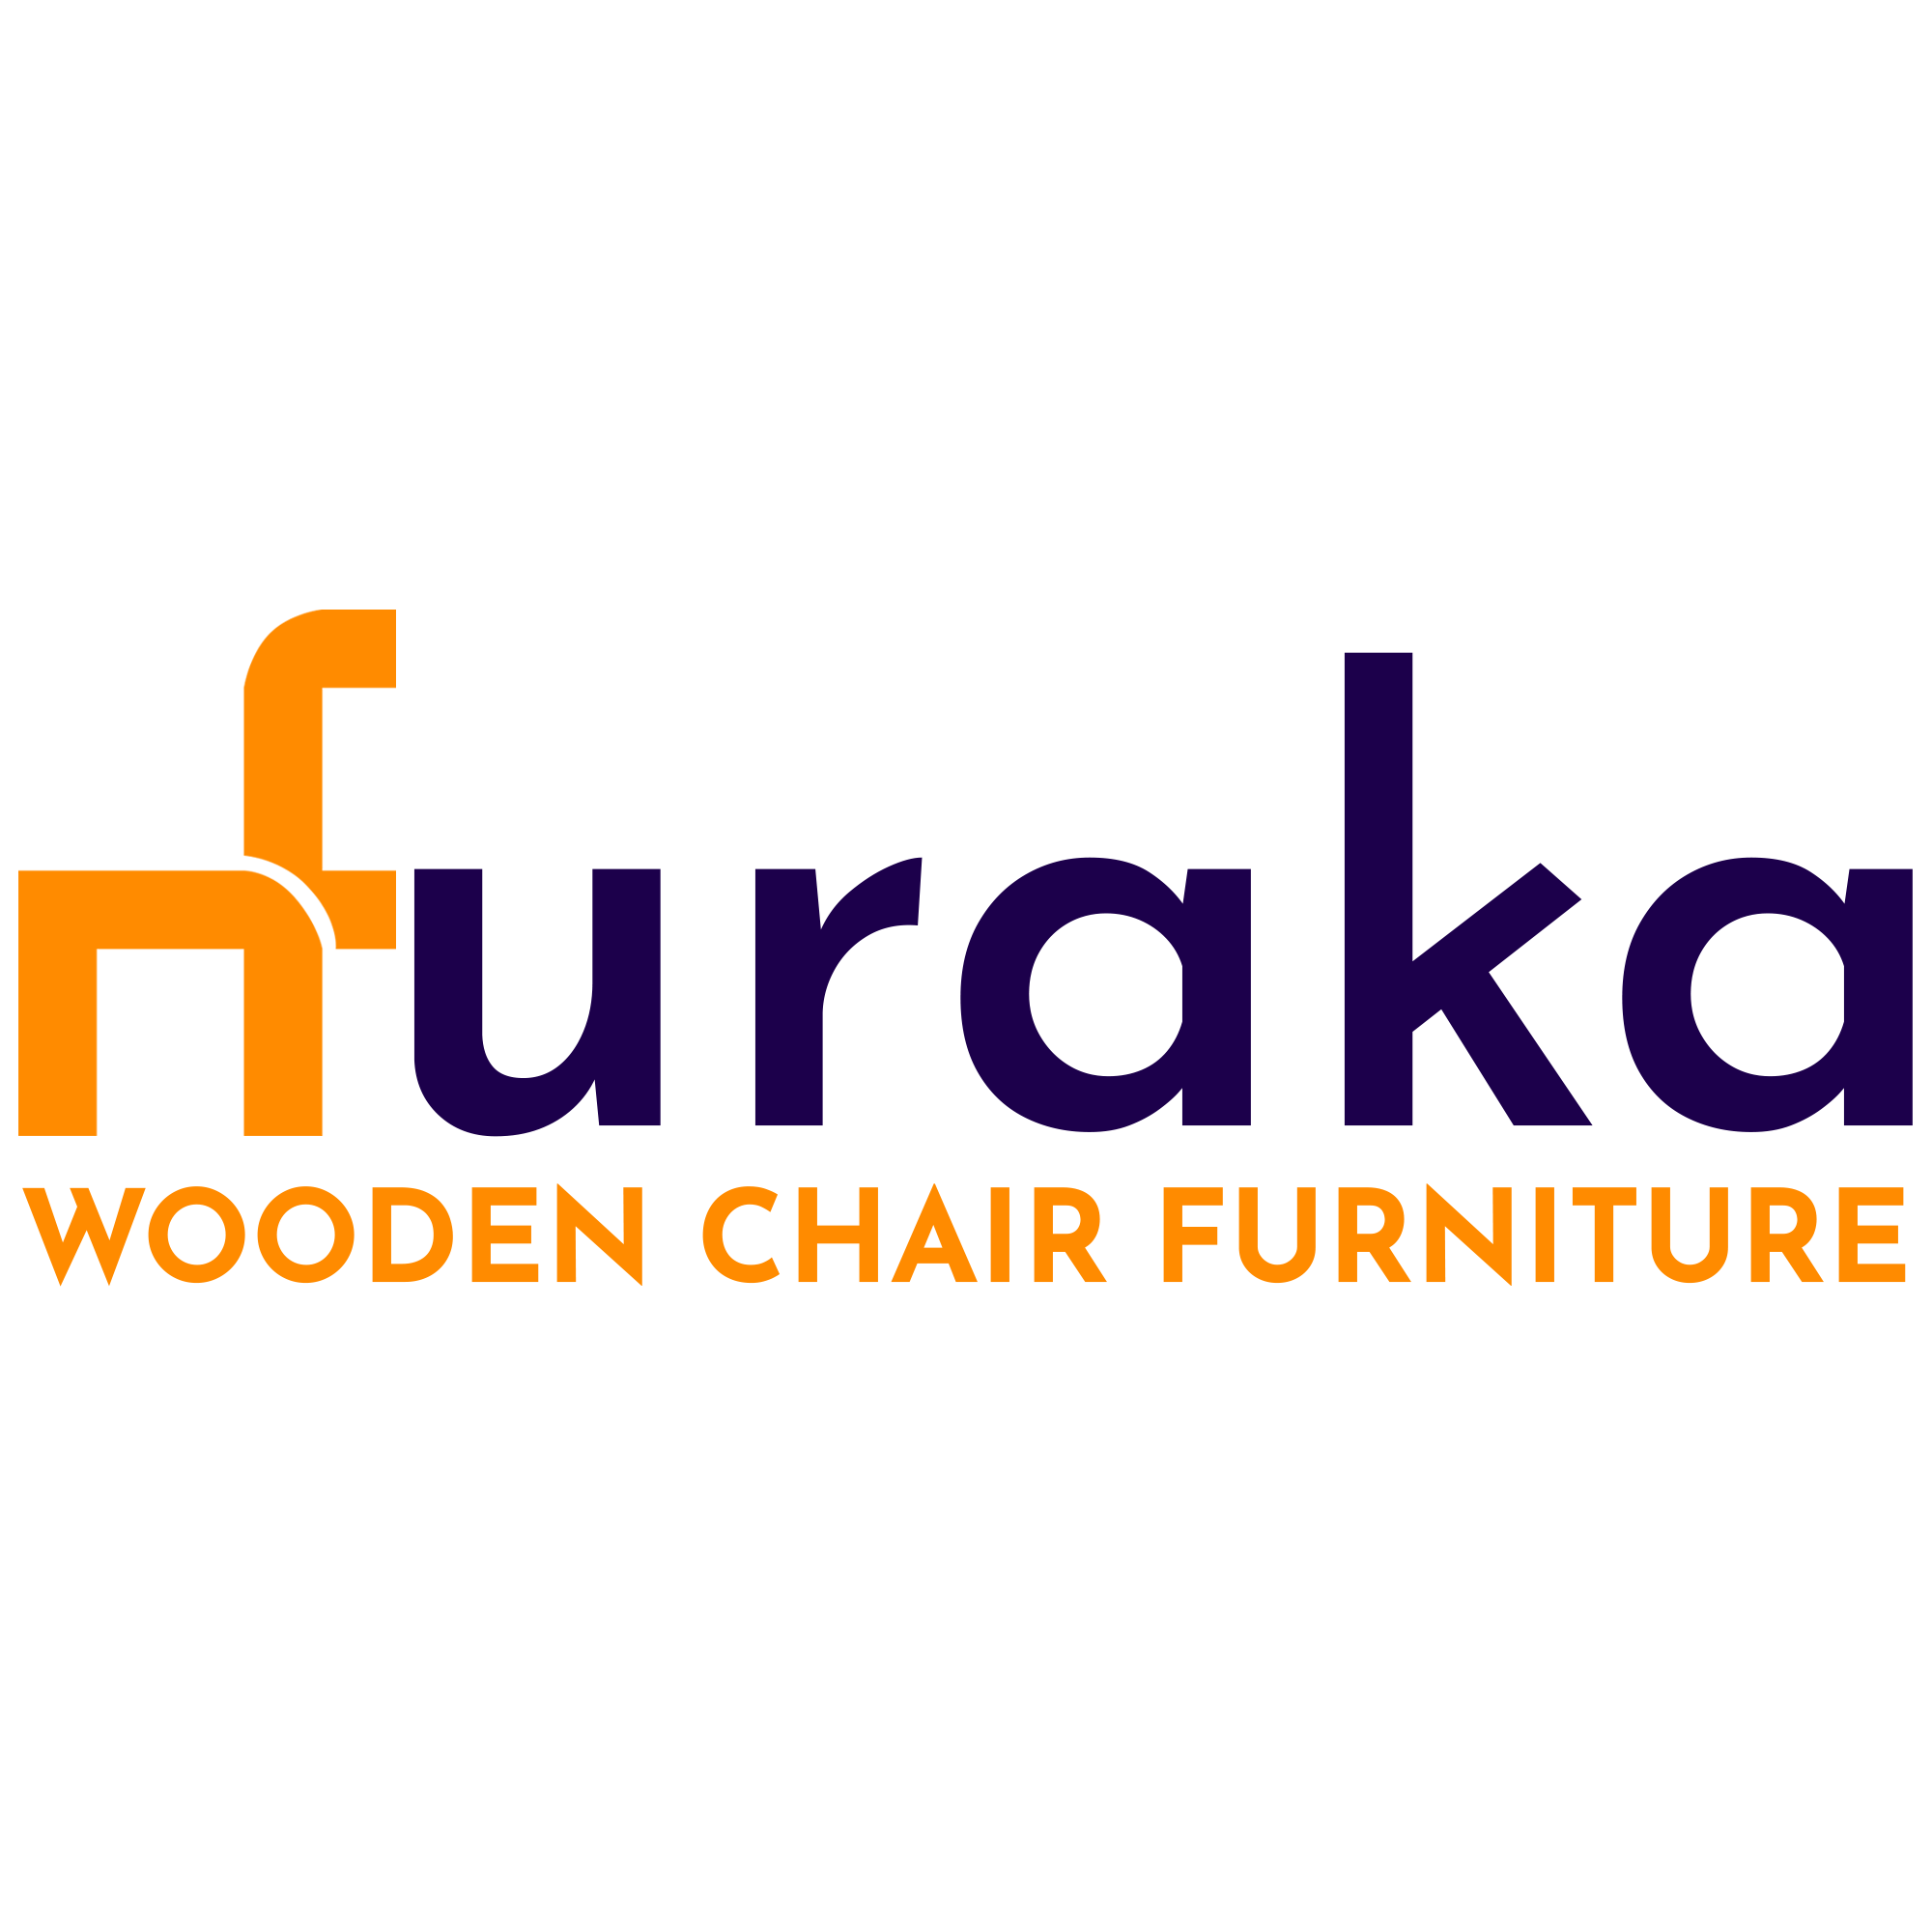 (c) Furaka.com